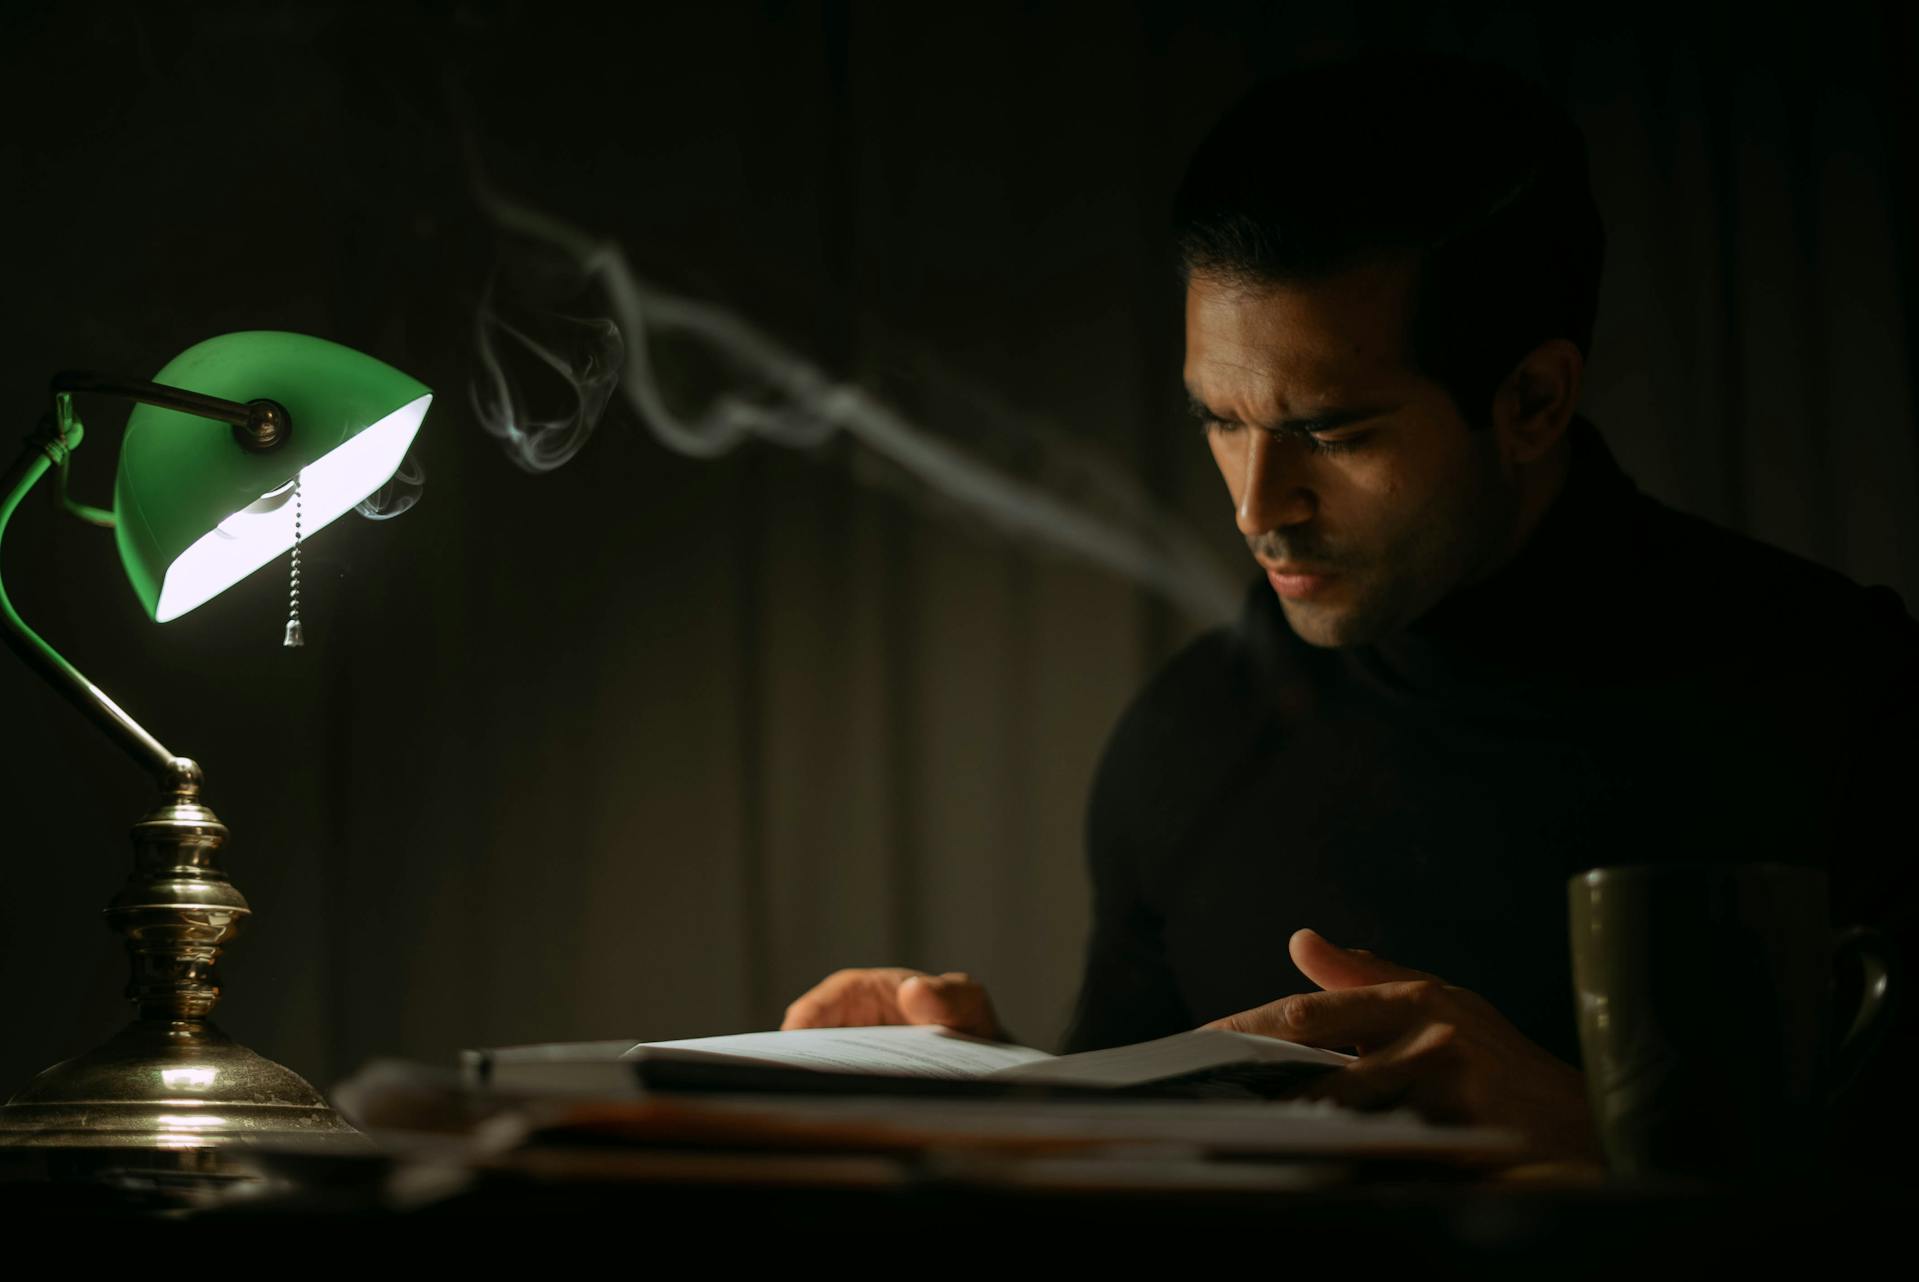 Un homme lisant un journal intime dans une pièce sombre | Source : Pexels